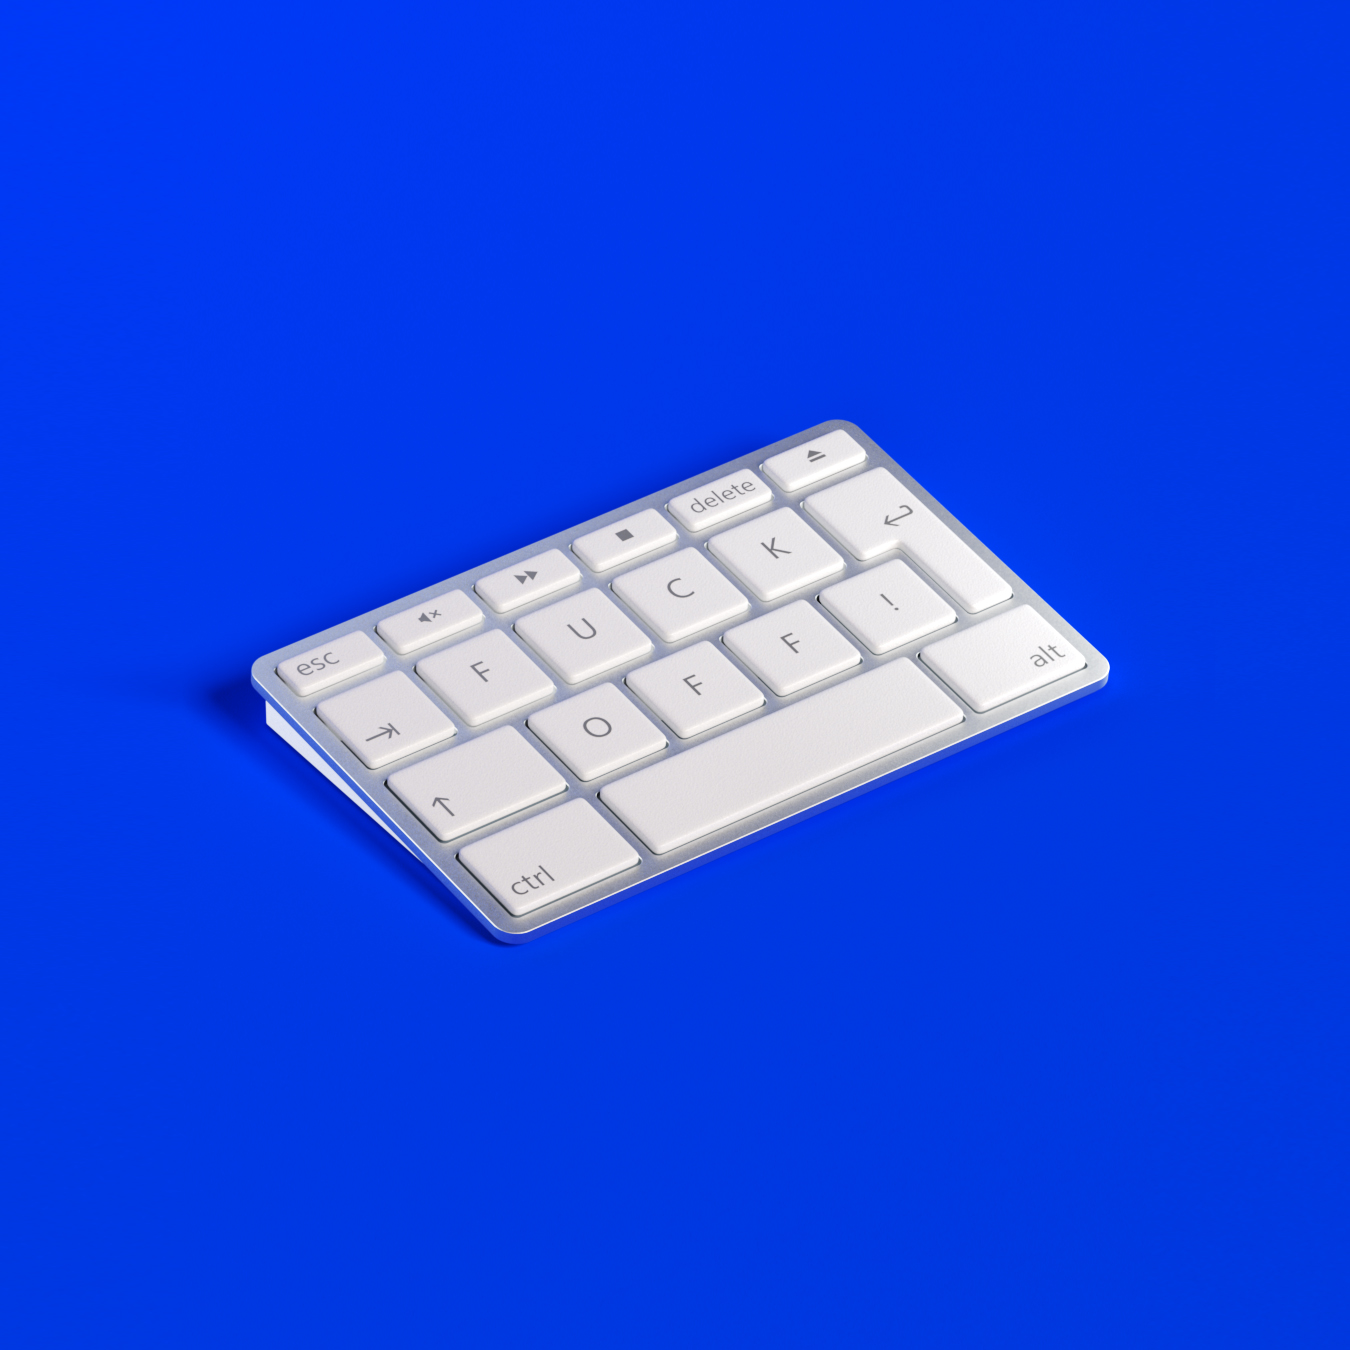 FuckOff_Keyboard1_blue_fleisch